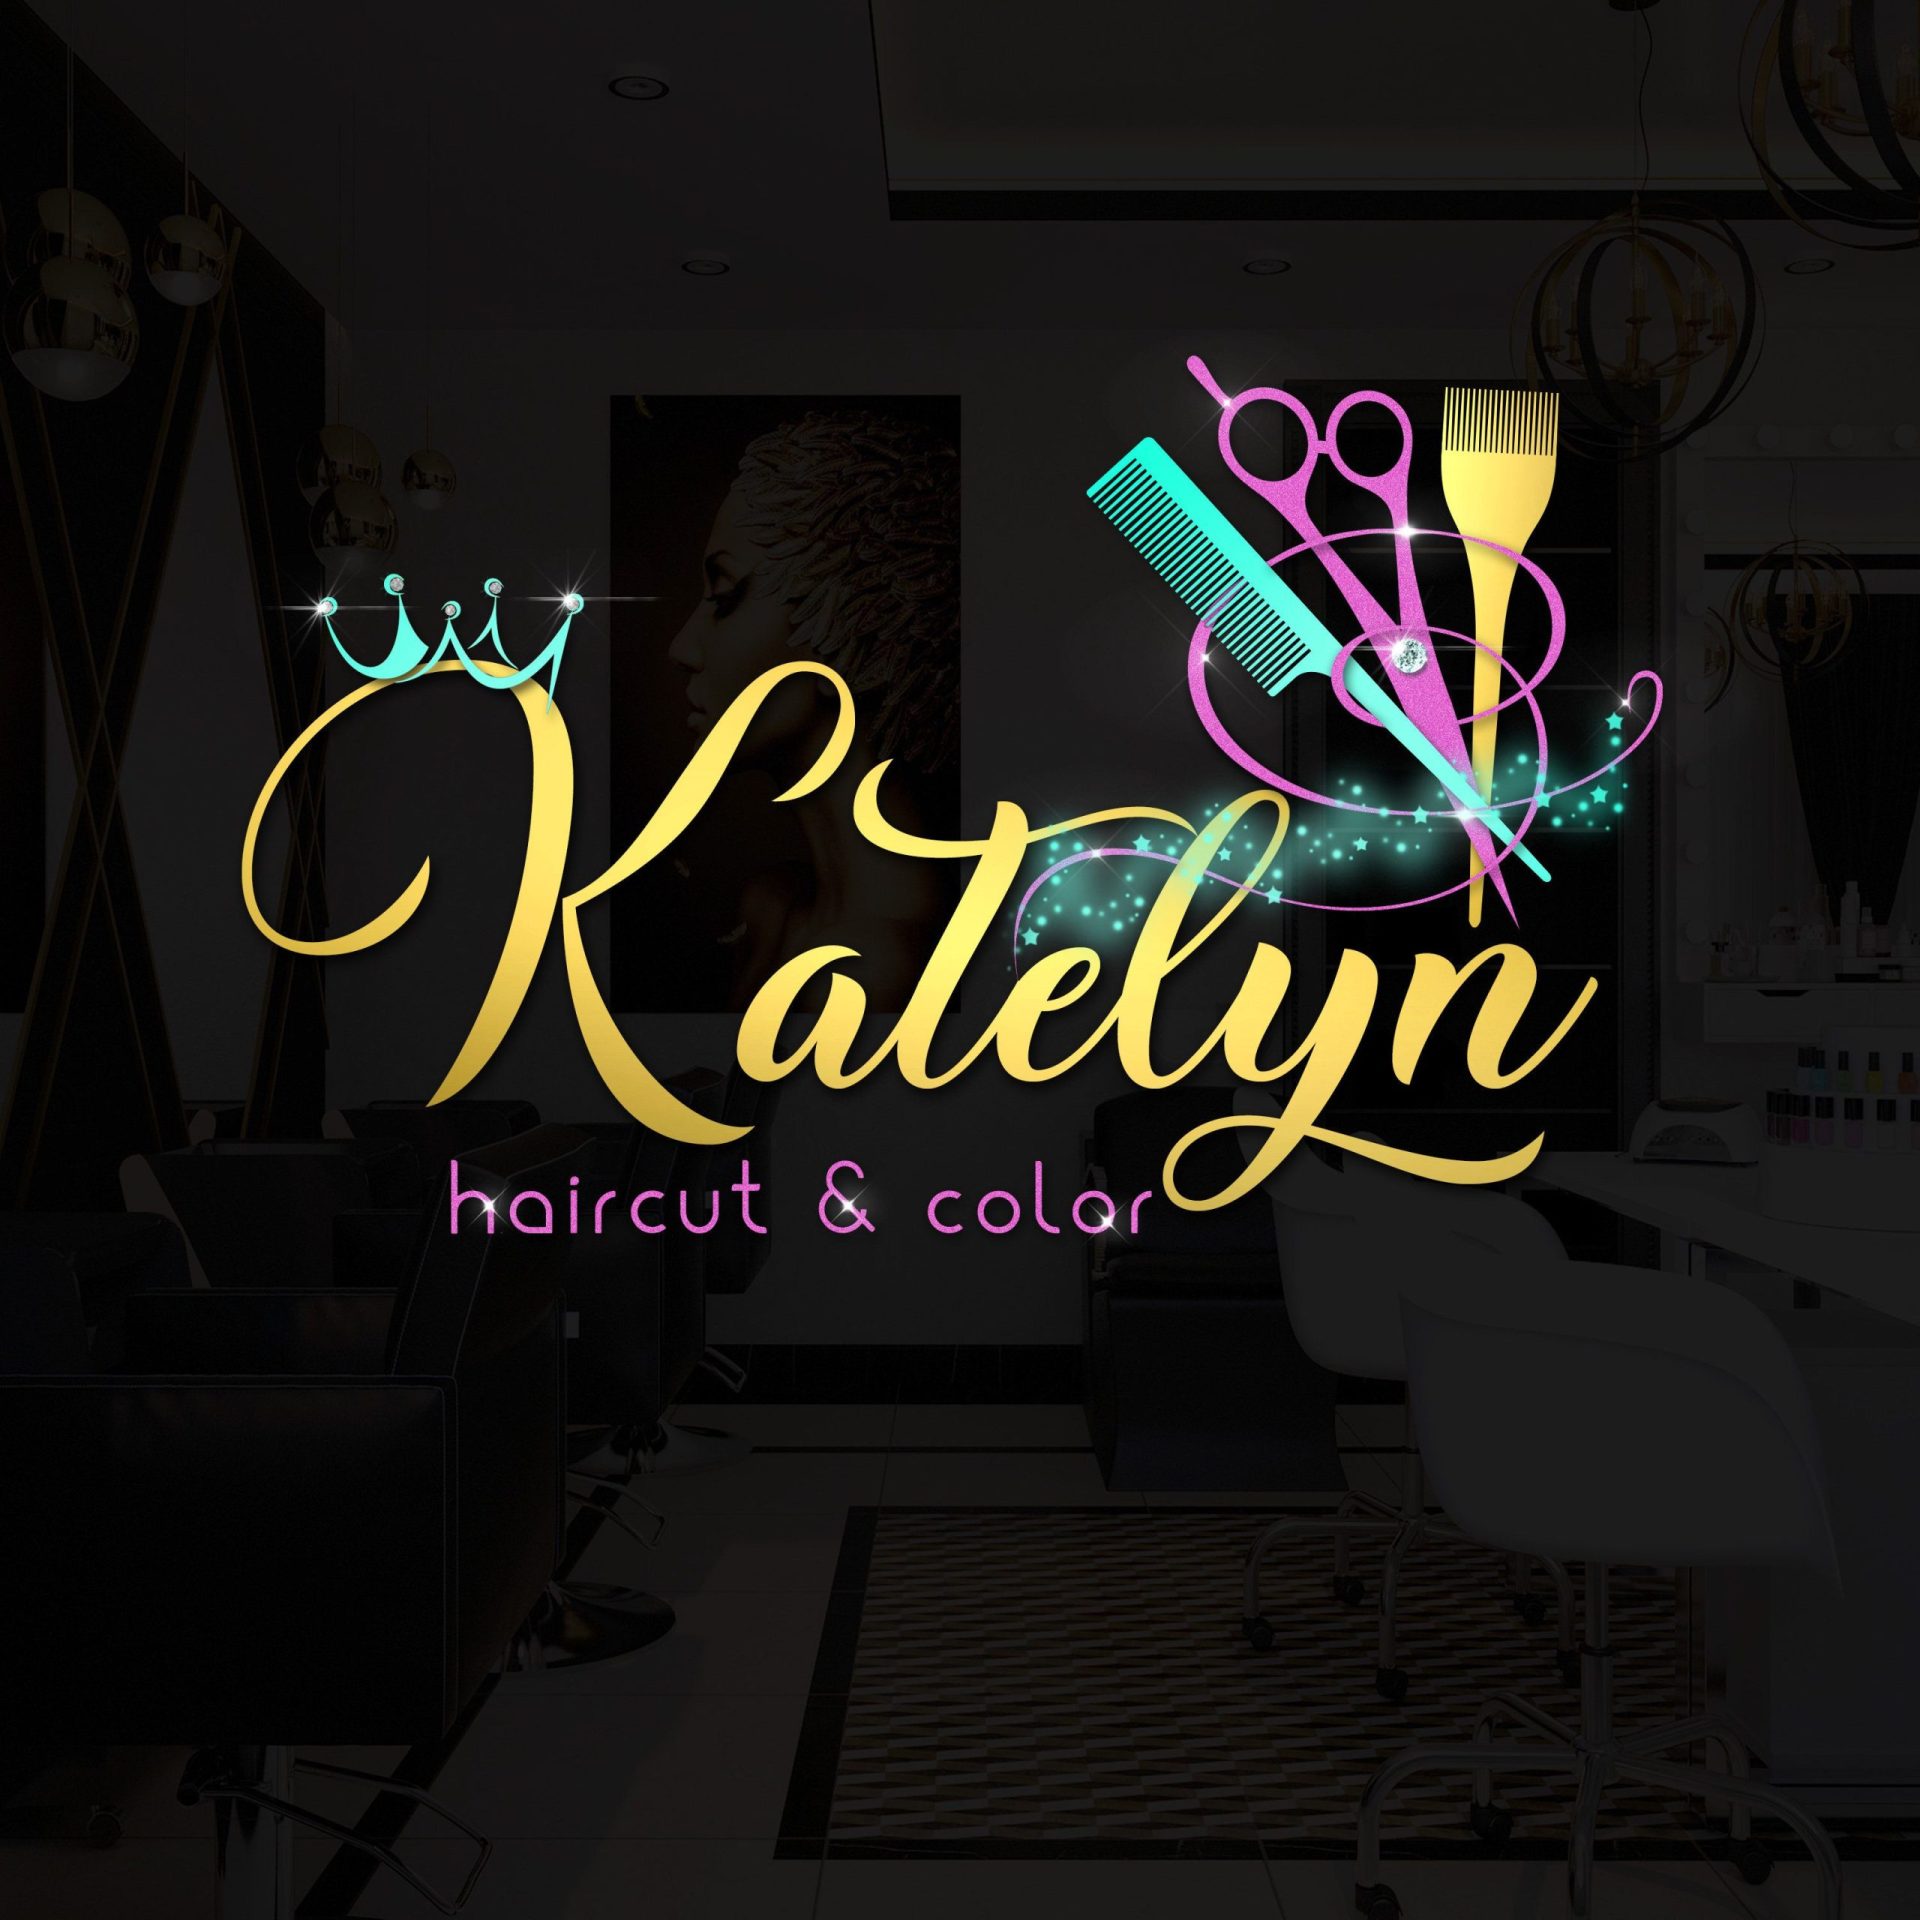 hairdresser logo ideas 9